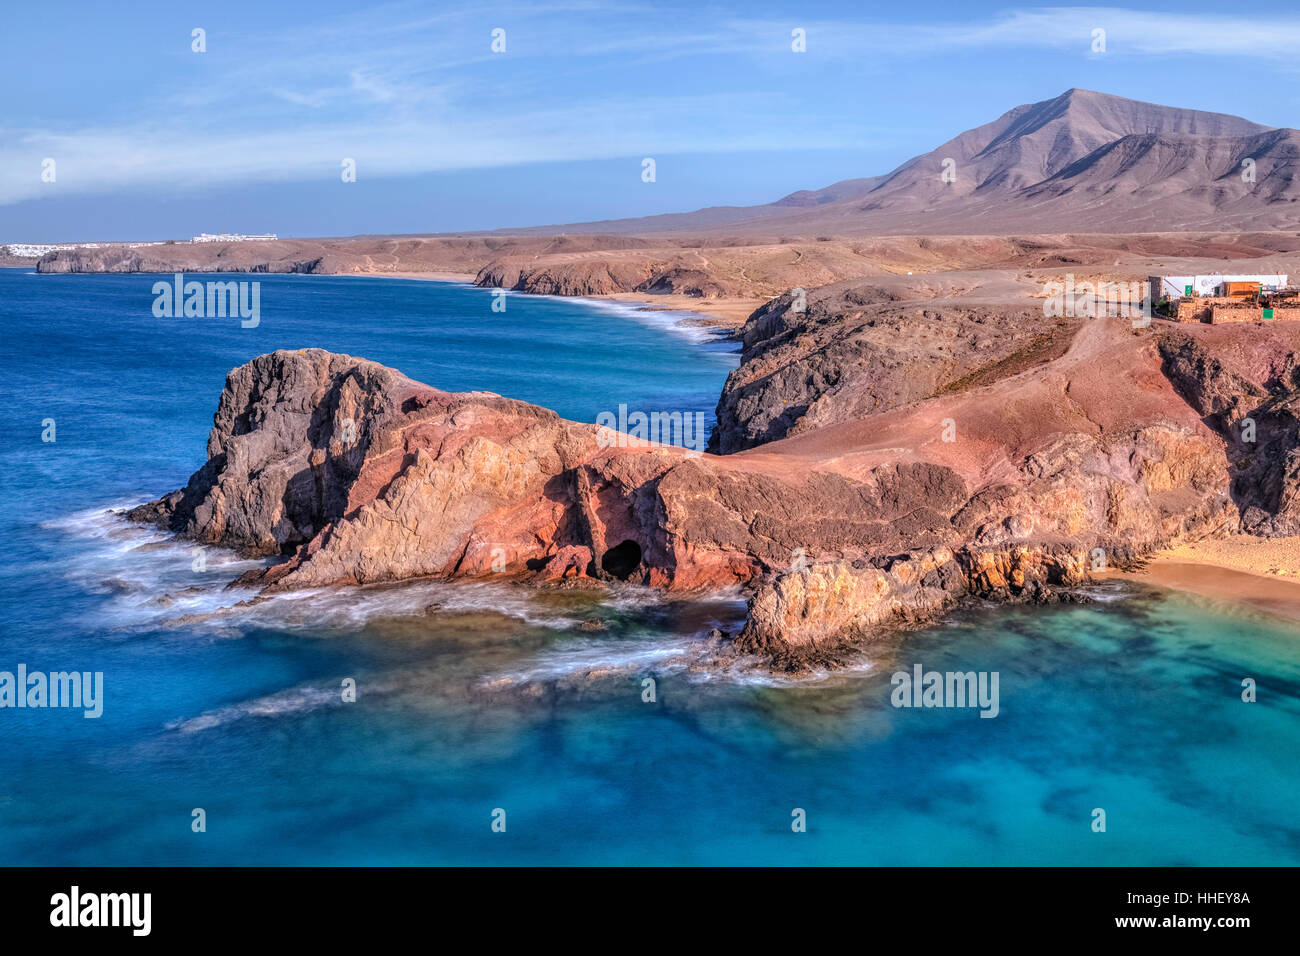 Playa blanca lanzarote tourists fotografías e imágenes de alta resolución -  Página 2 - Alamy